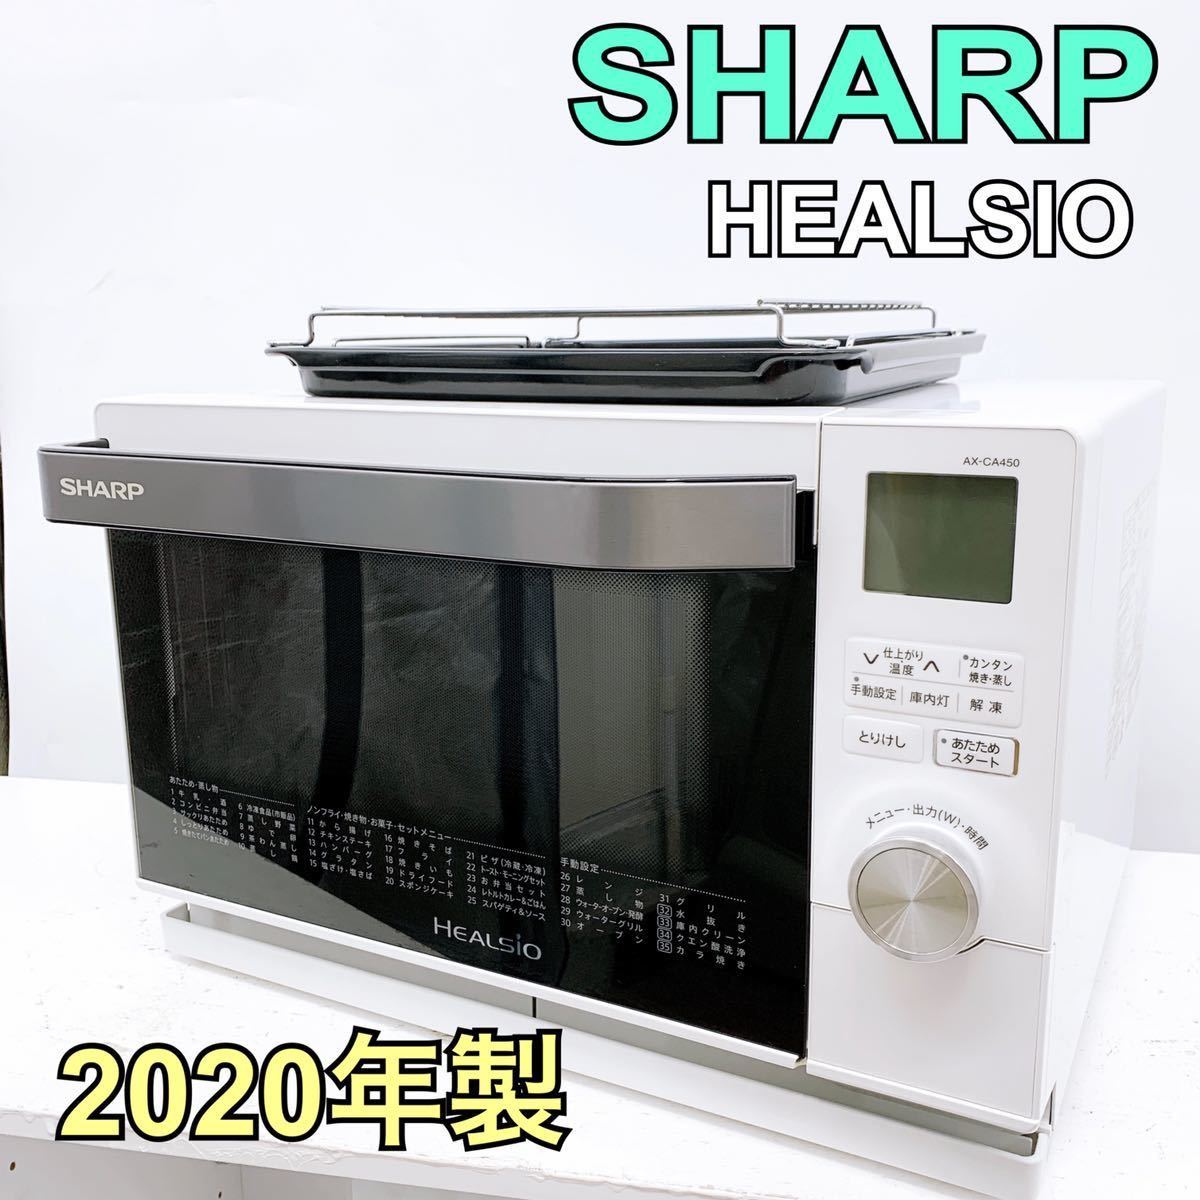 SHARP ウォーターオーブン AX-CA450-W 2020年製-